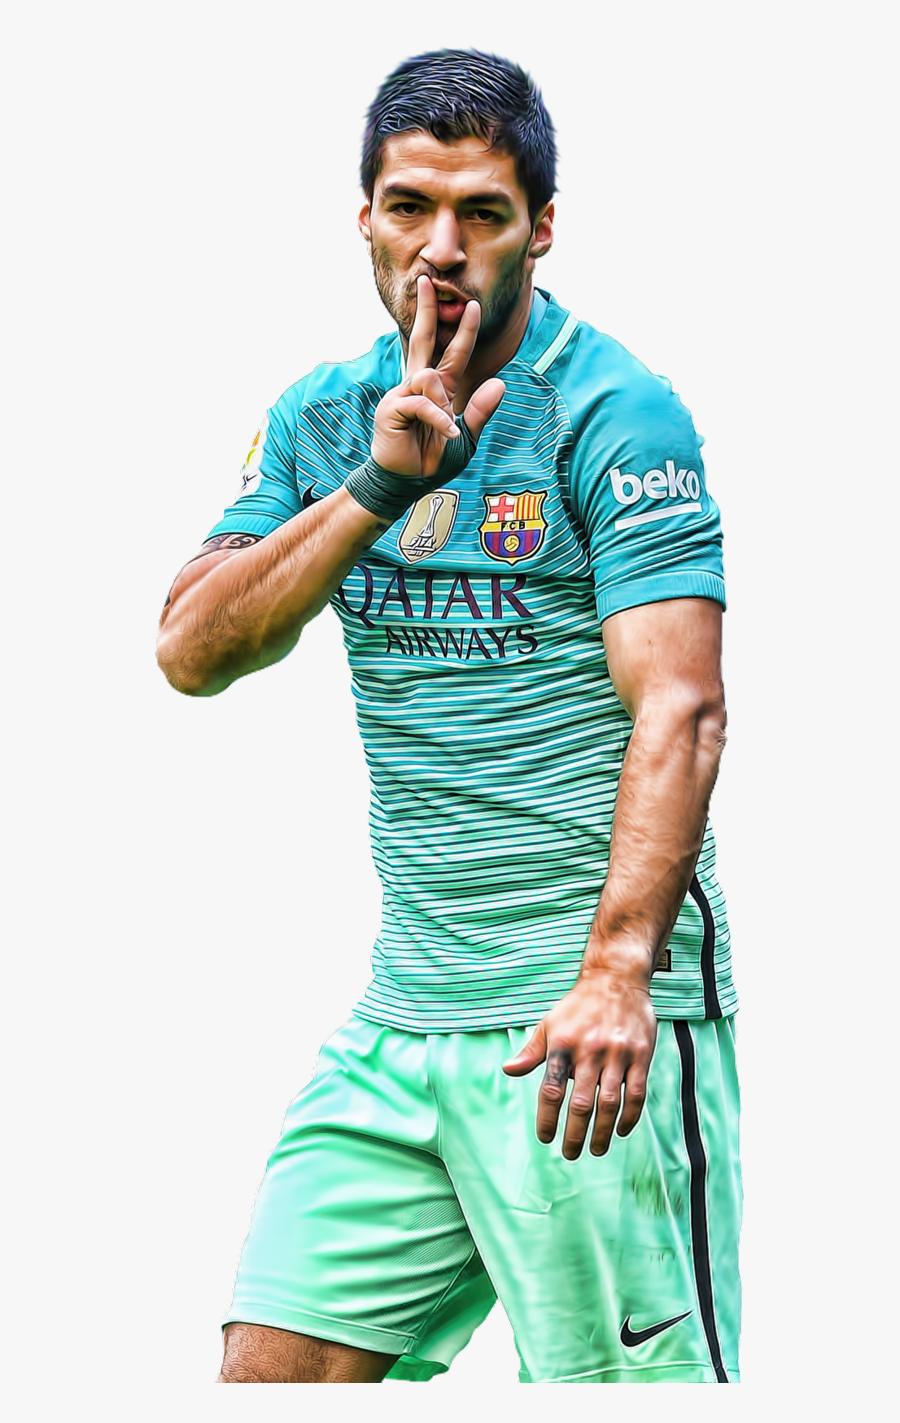 Luis Suarez Football Png Clipart Clipart Image, Transparent Clipart